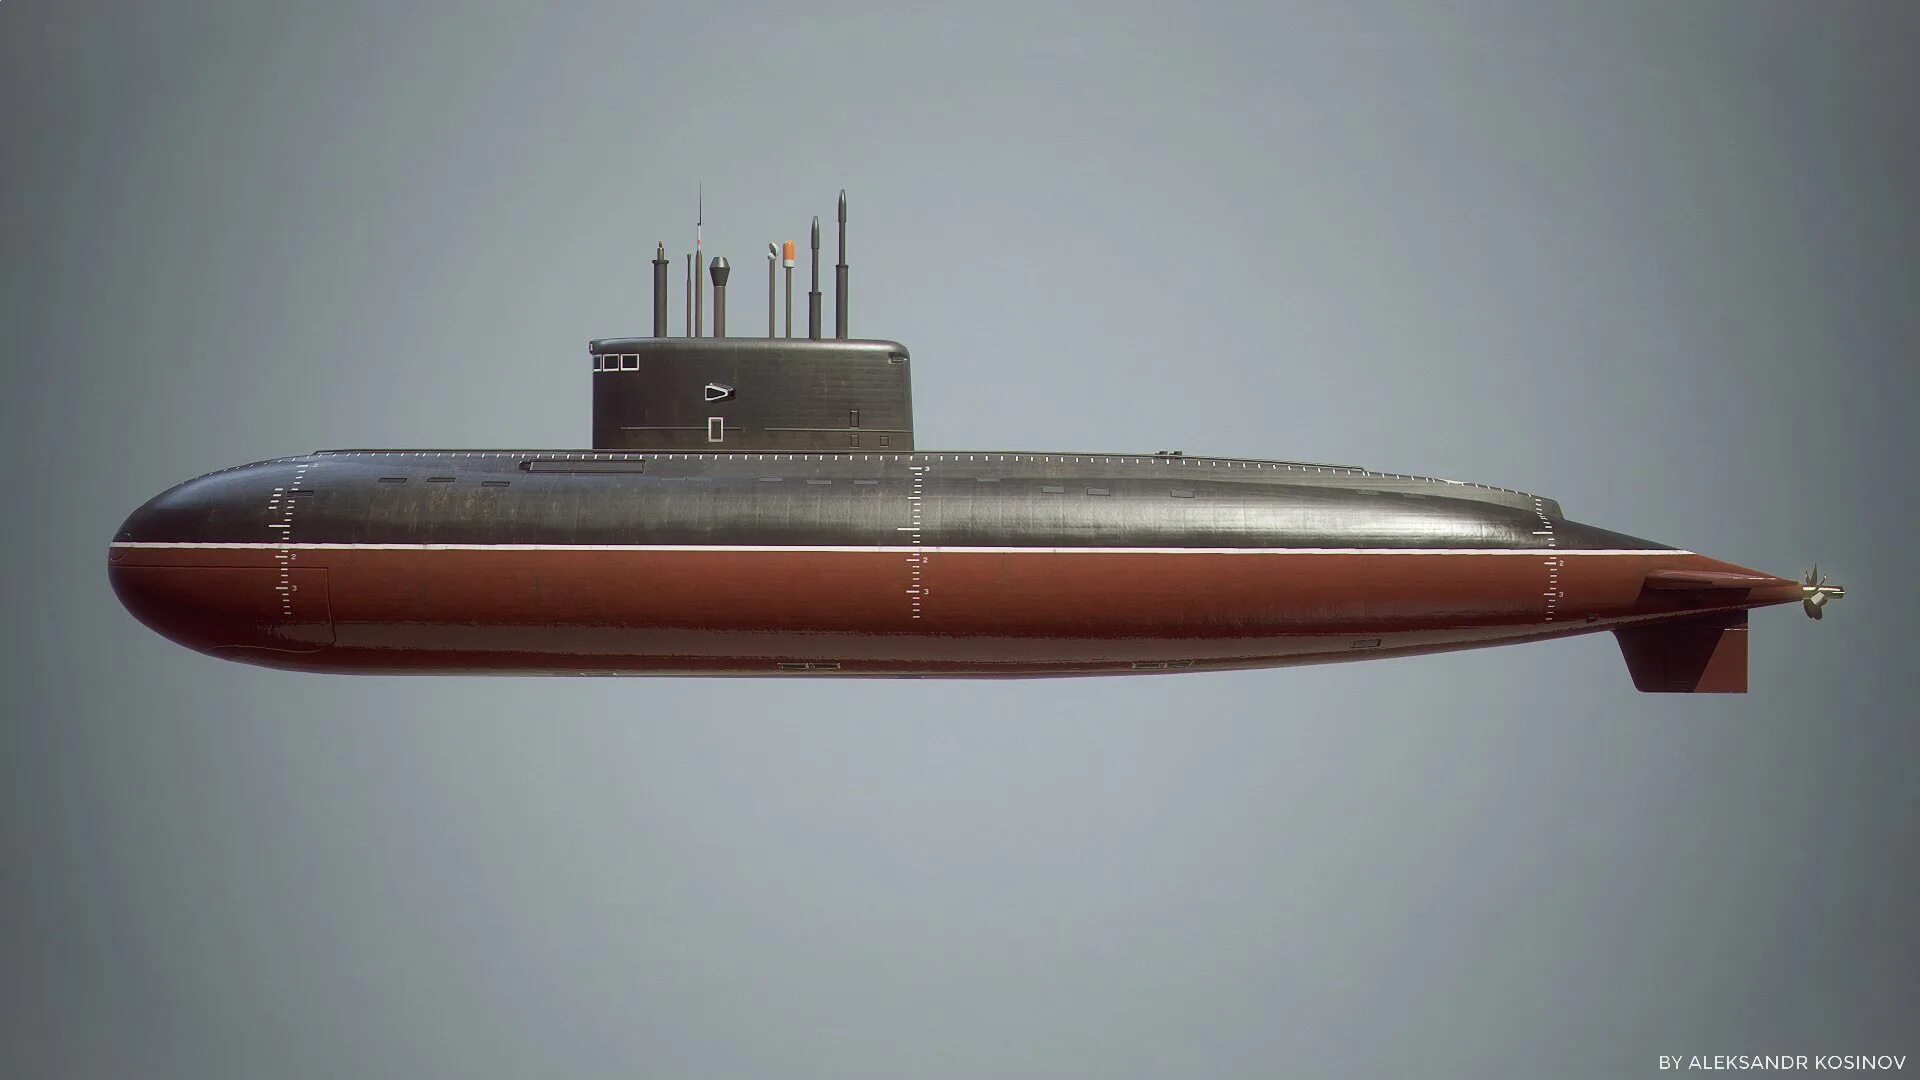 Пл характеристики. Варшавянка подводная лодка. Подводные лодки проекта 636 «Варшавянка». Варшавянка подводная лодка 877. Подлодка 636 Варшавянка.